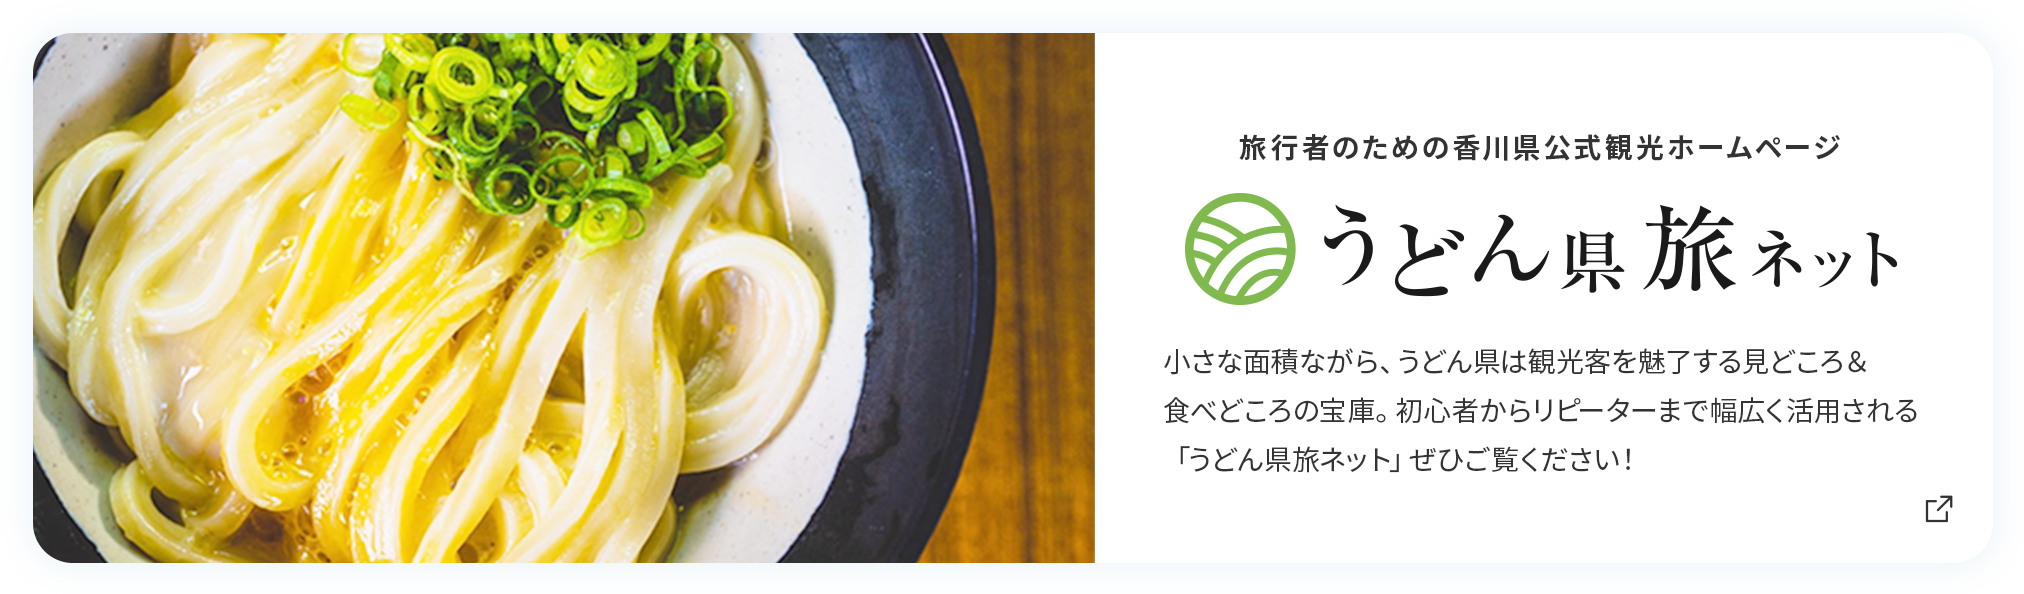 旅行者のための香川県公式観光ホームページ「うどん県旅ネット」。小さな面積ながら、うどん県は観光客を魅了する見どころ&食べどころの宝庫。初心者からリピーターまで幅広く活用される「うどん県旅ネット」をぜひご覧ください！